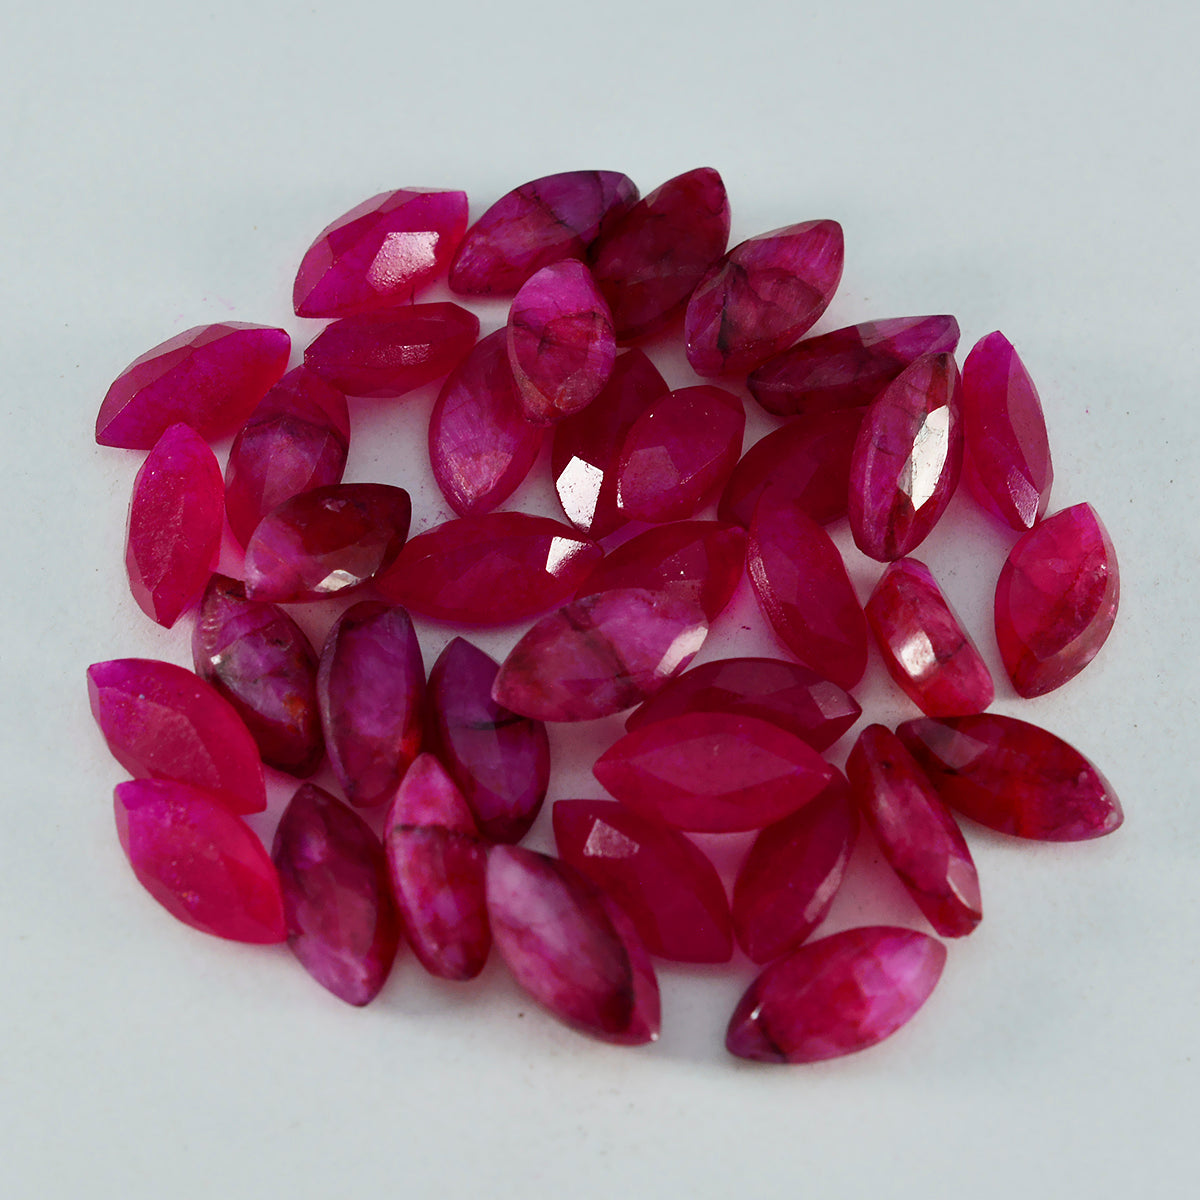 Riyogems 1 pieza de jaspe rojo natural facetado de 0.354 x 0.709 in con forma de marquesa, piedra preciosa de calidad AAA